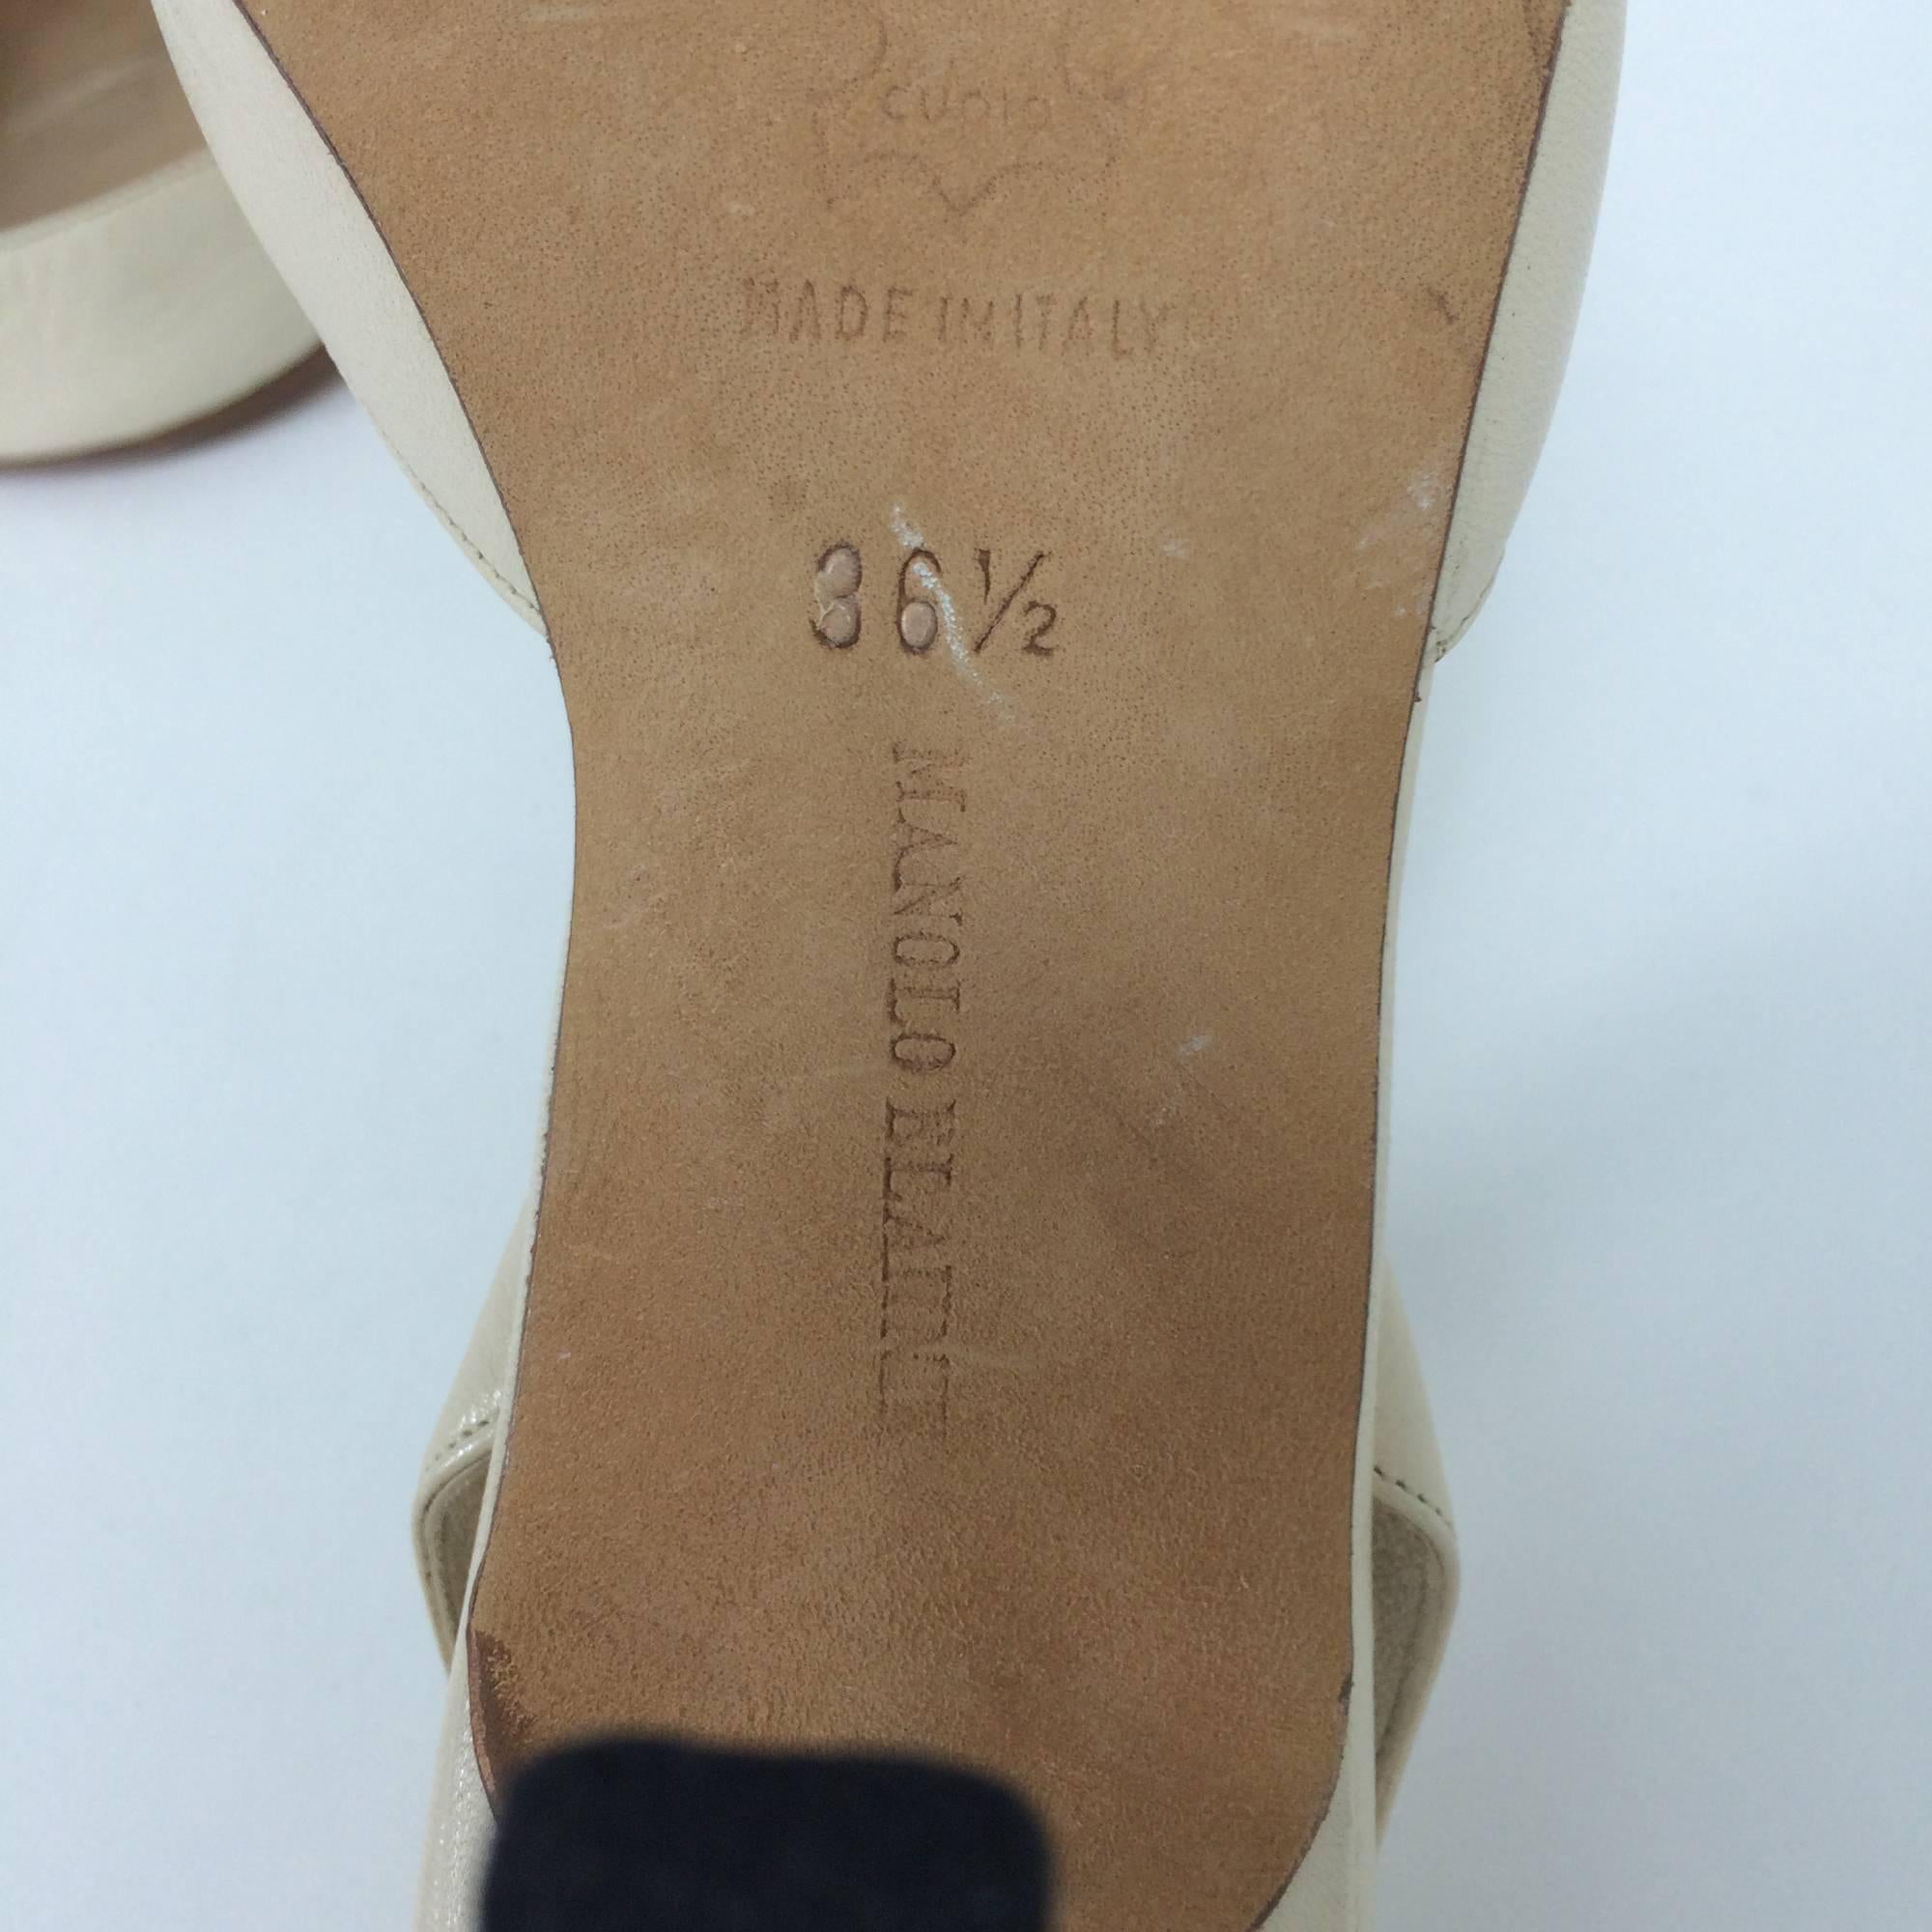 Brown Manolo Blahnik bone leather sling back high heel pumps 36 1/2 M